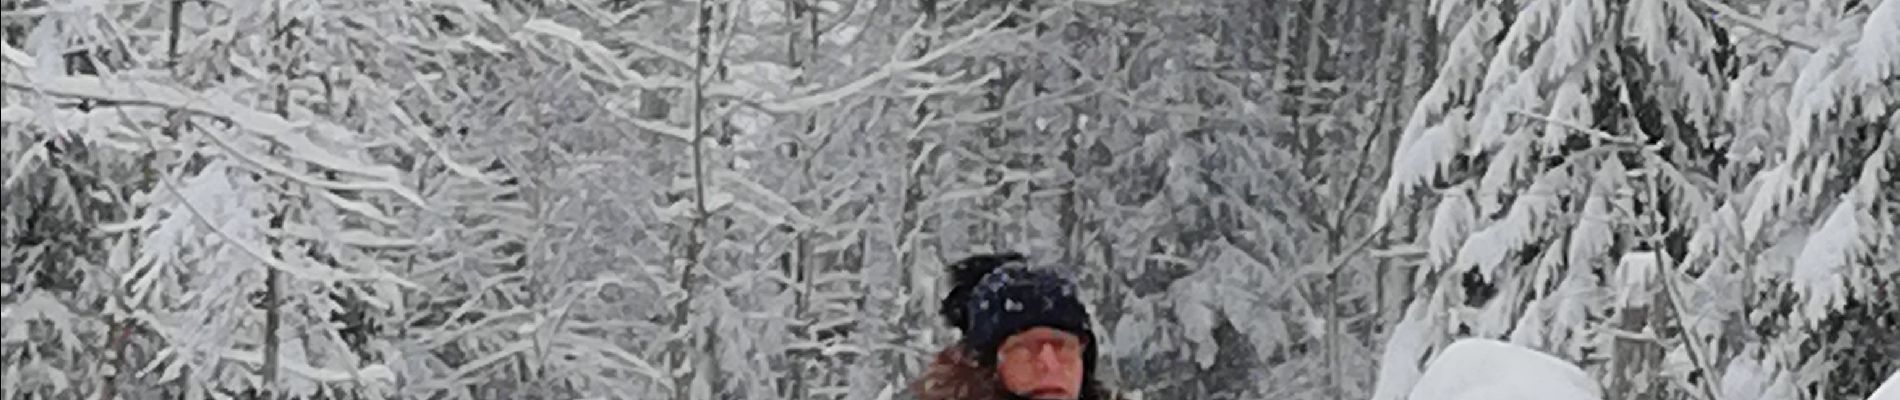 Excursión Raquetas de nieve Lenzkirch - raquette - Photo